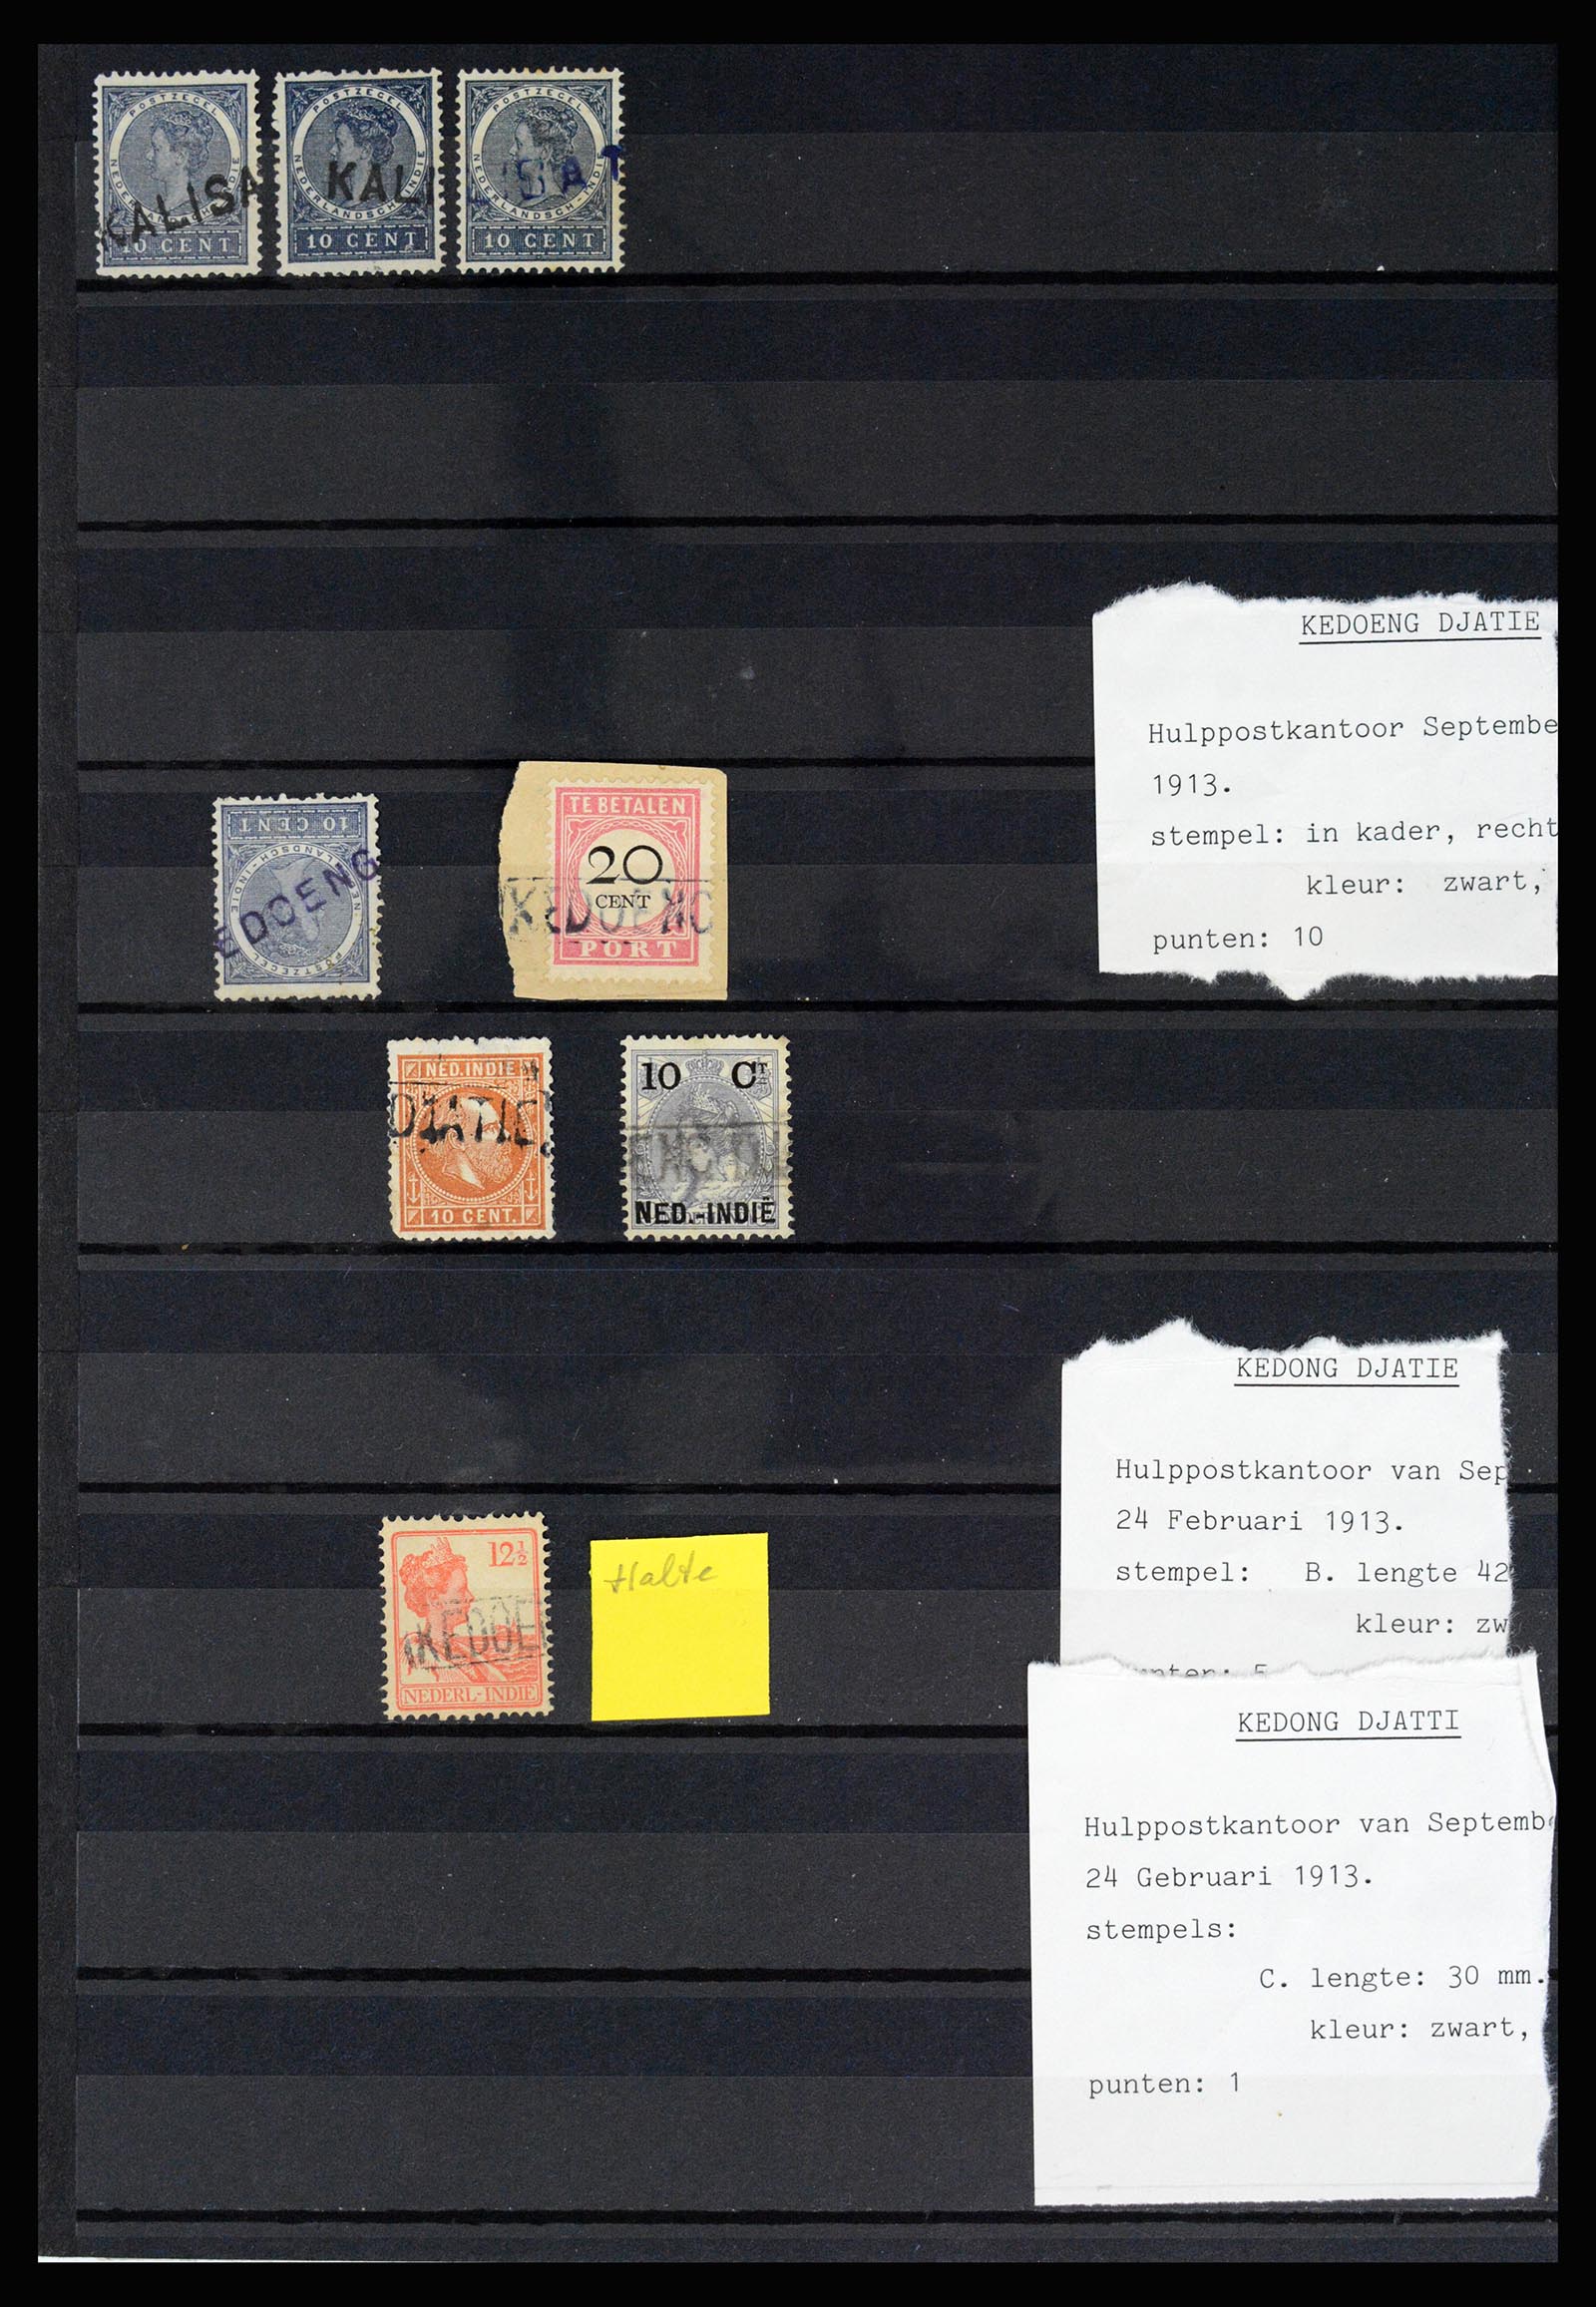 36512 030 - Stamp collection 36512 Nederlands Indië stempels 1872-1930.